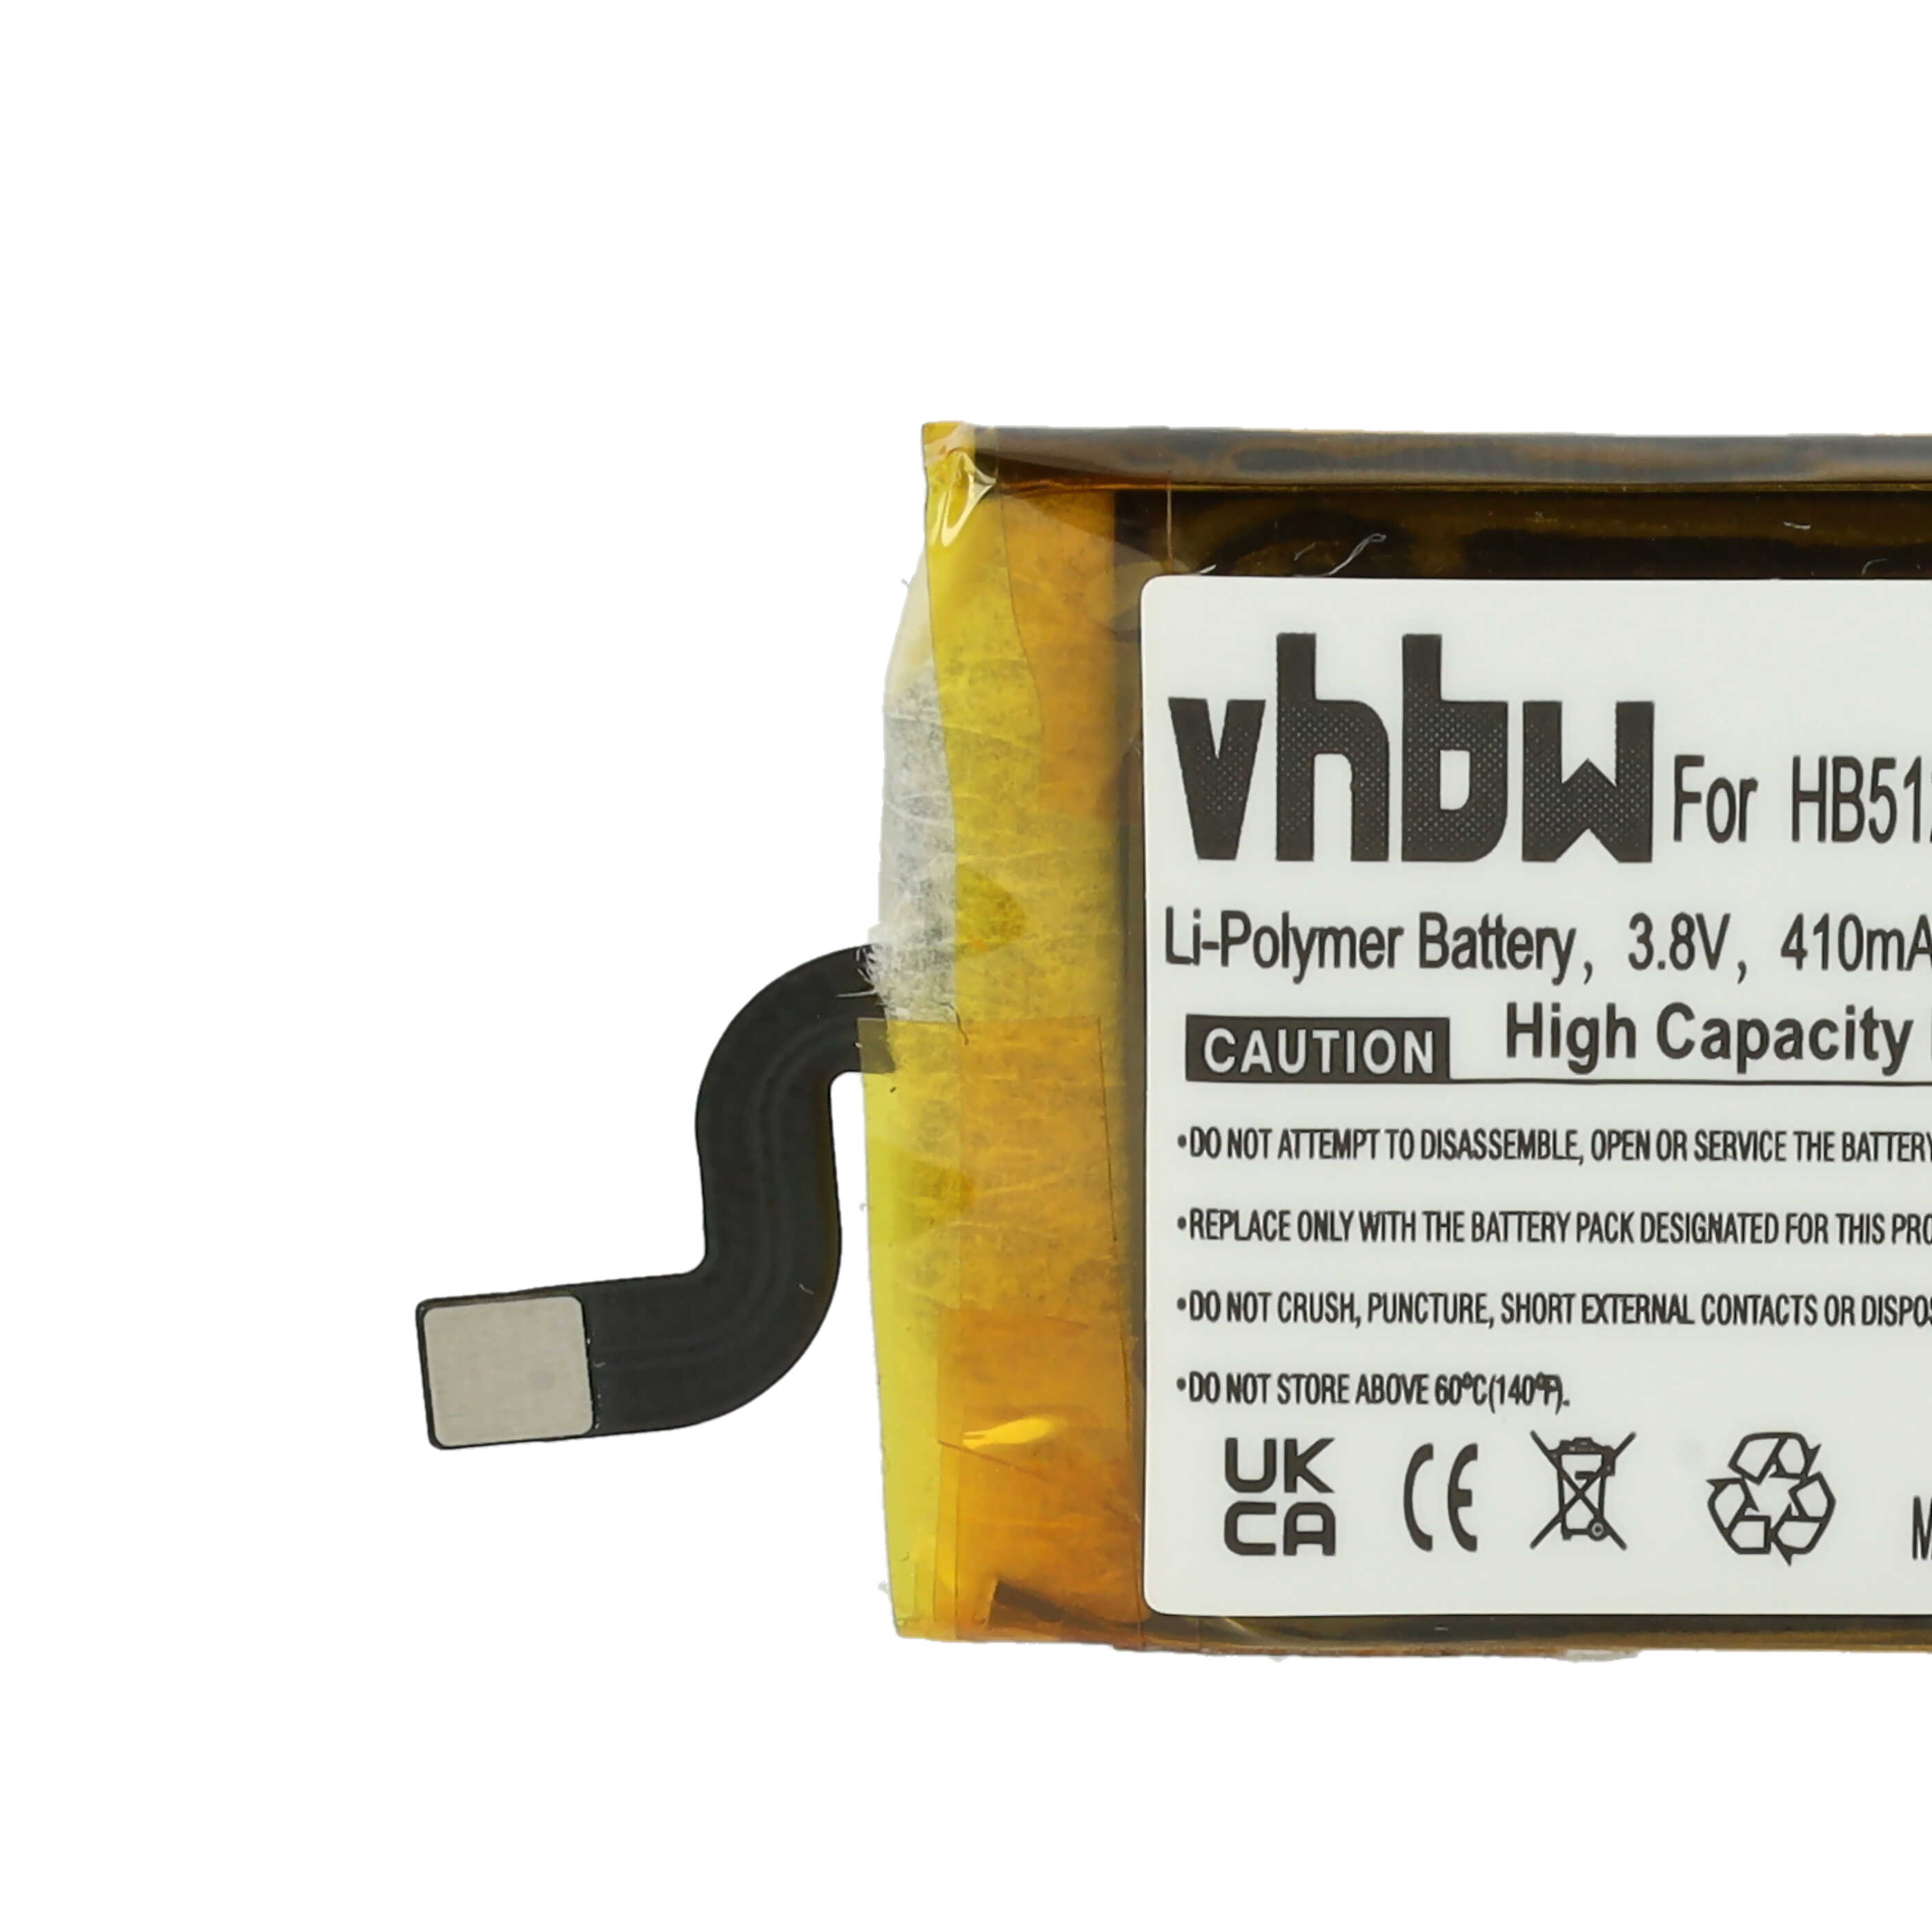 Batterie remplace Huawei HB512627ECW pour montre connectée - 410mAh 3,8V Li-polymère + outils